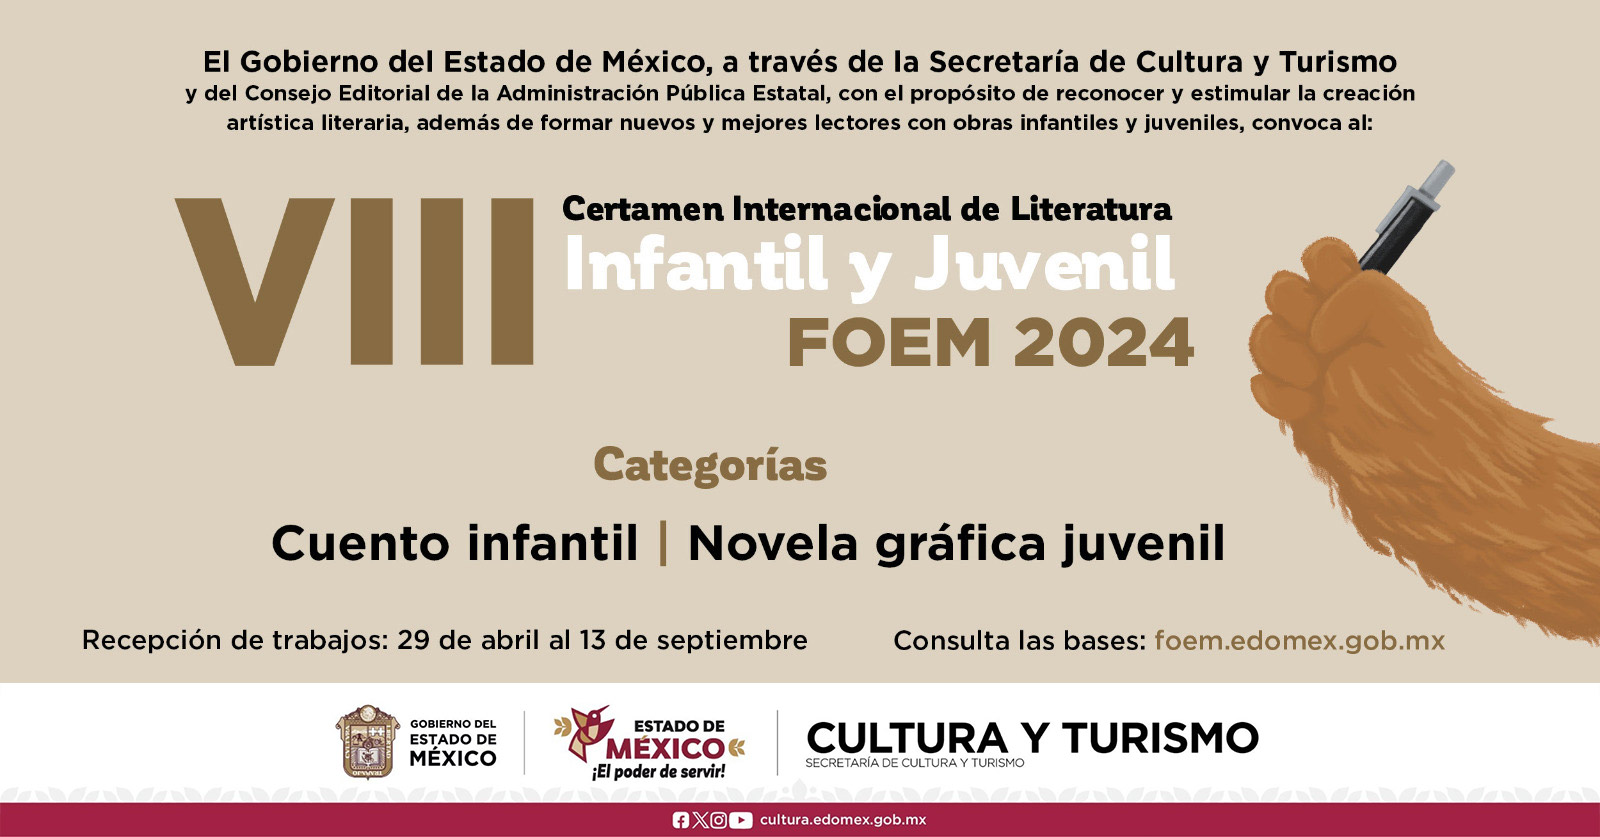 CERTAMEN INTERNACIONAL DE LITERATURA INFANTIL Y JUVENIL FOEM 2024